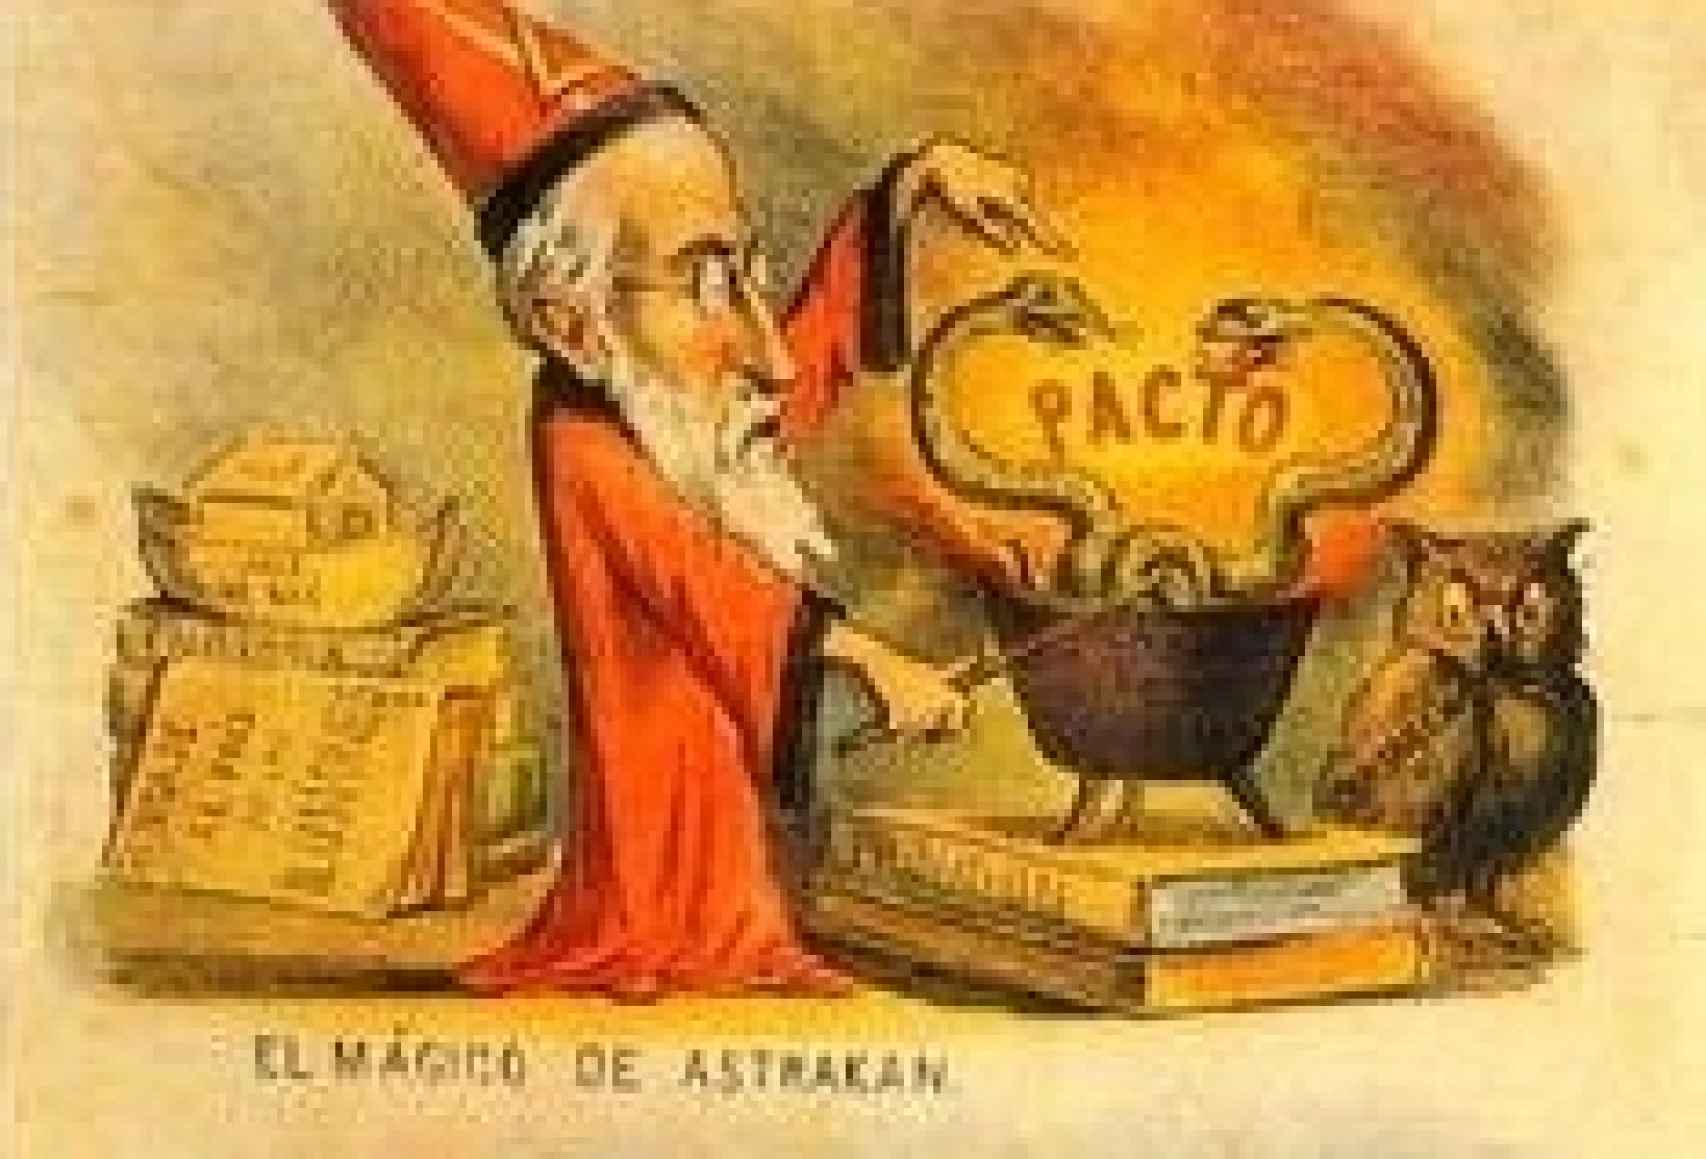 Ilustración del mago de Astracán.